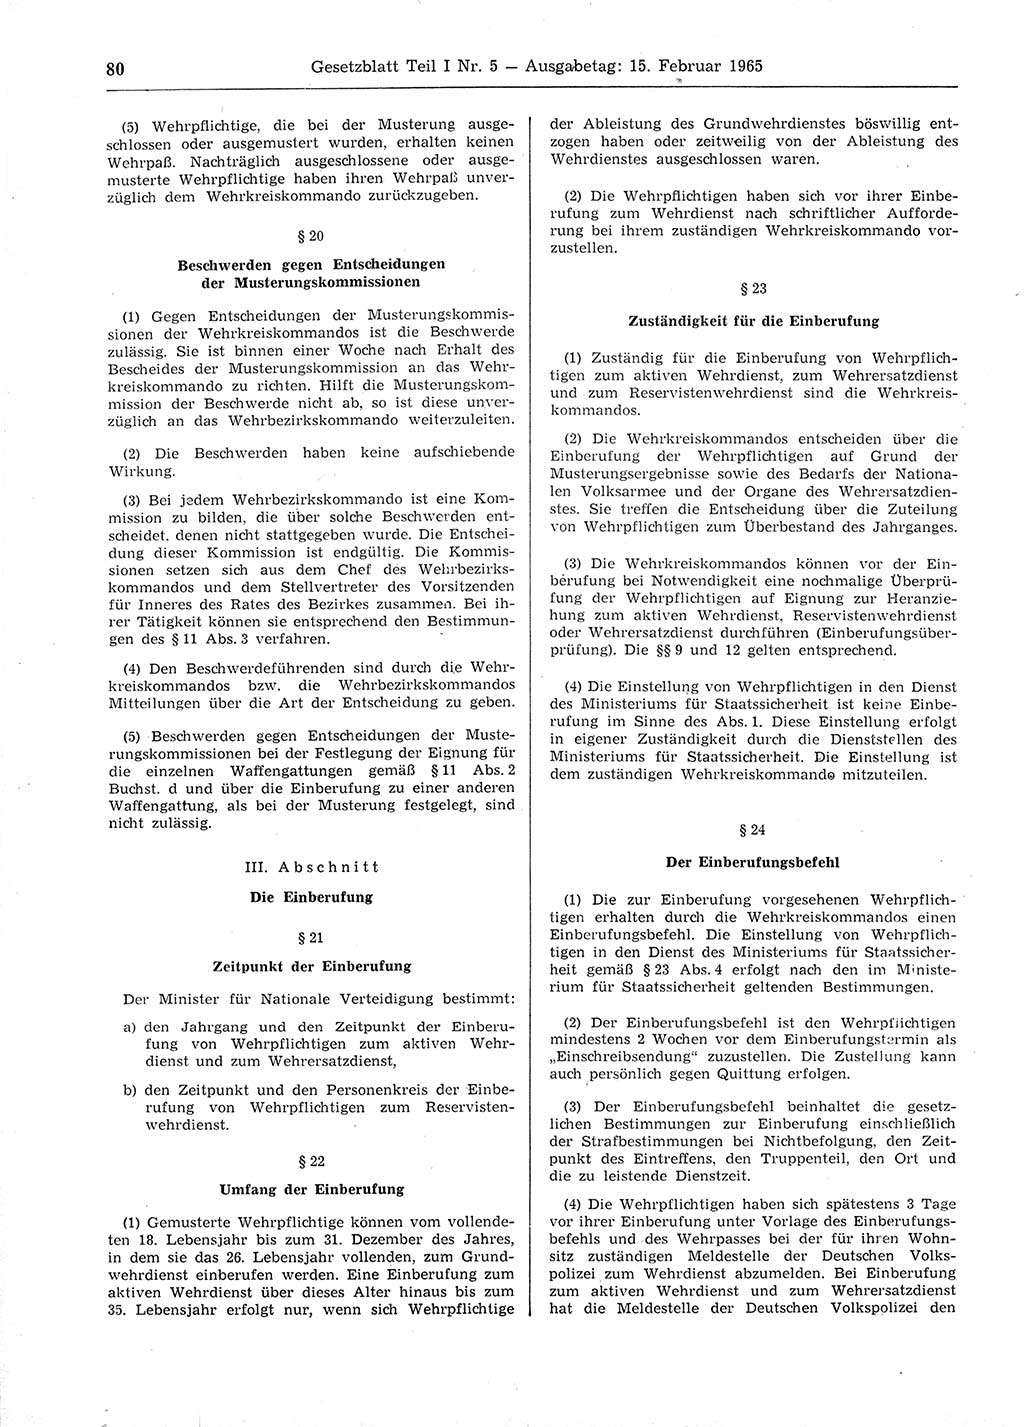 Gesetzblatt (GBl.) der Deutschen Demokratischen Republik (DDR) Teil Ⅰ 1965, Seite 80 (GBl. DDR Ⅰ 1965, S. 80)